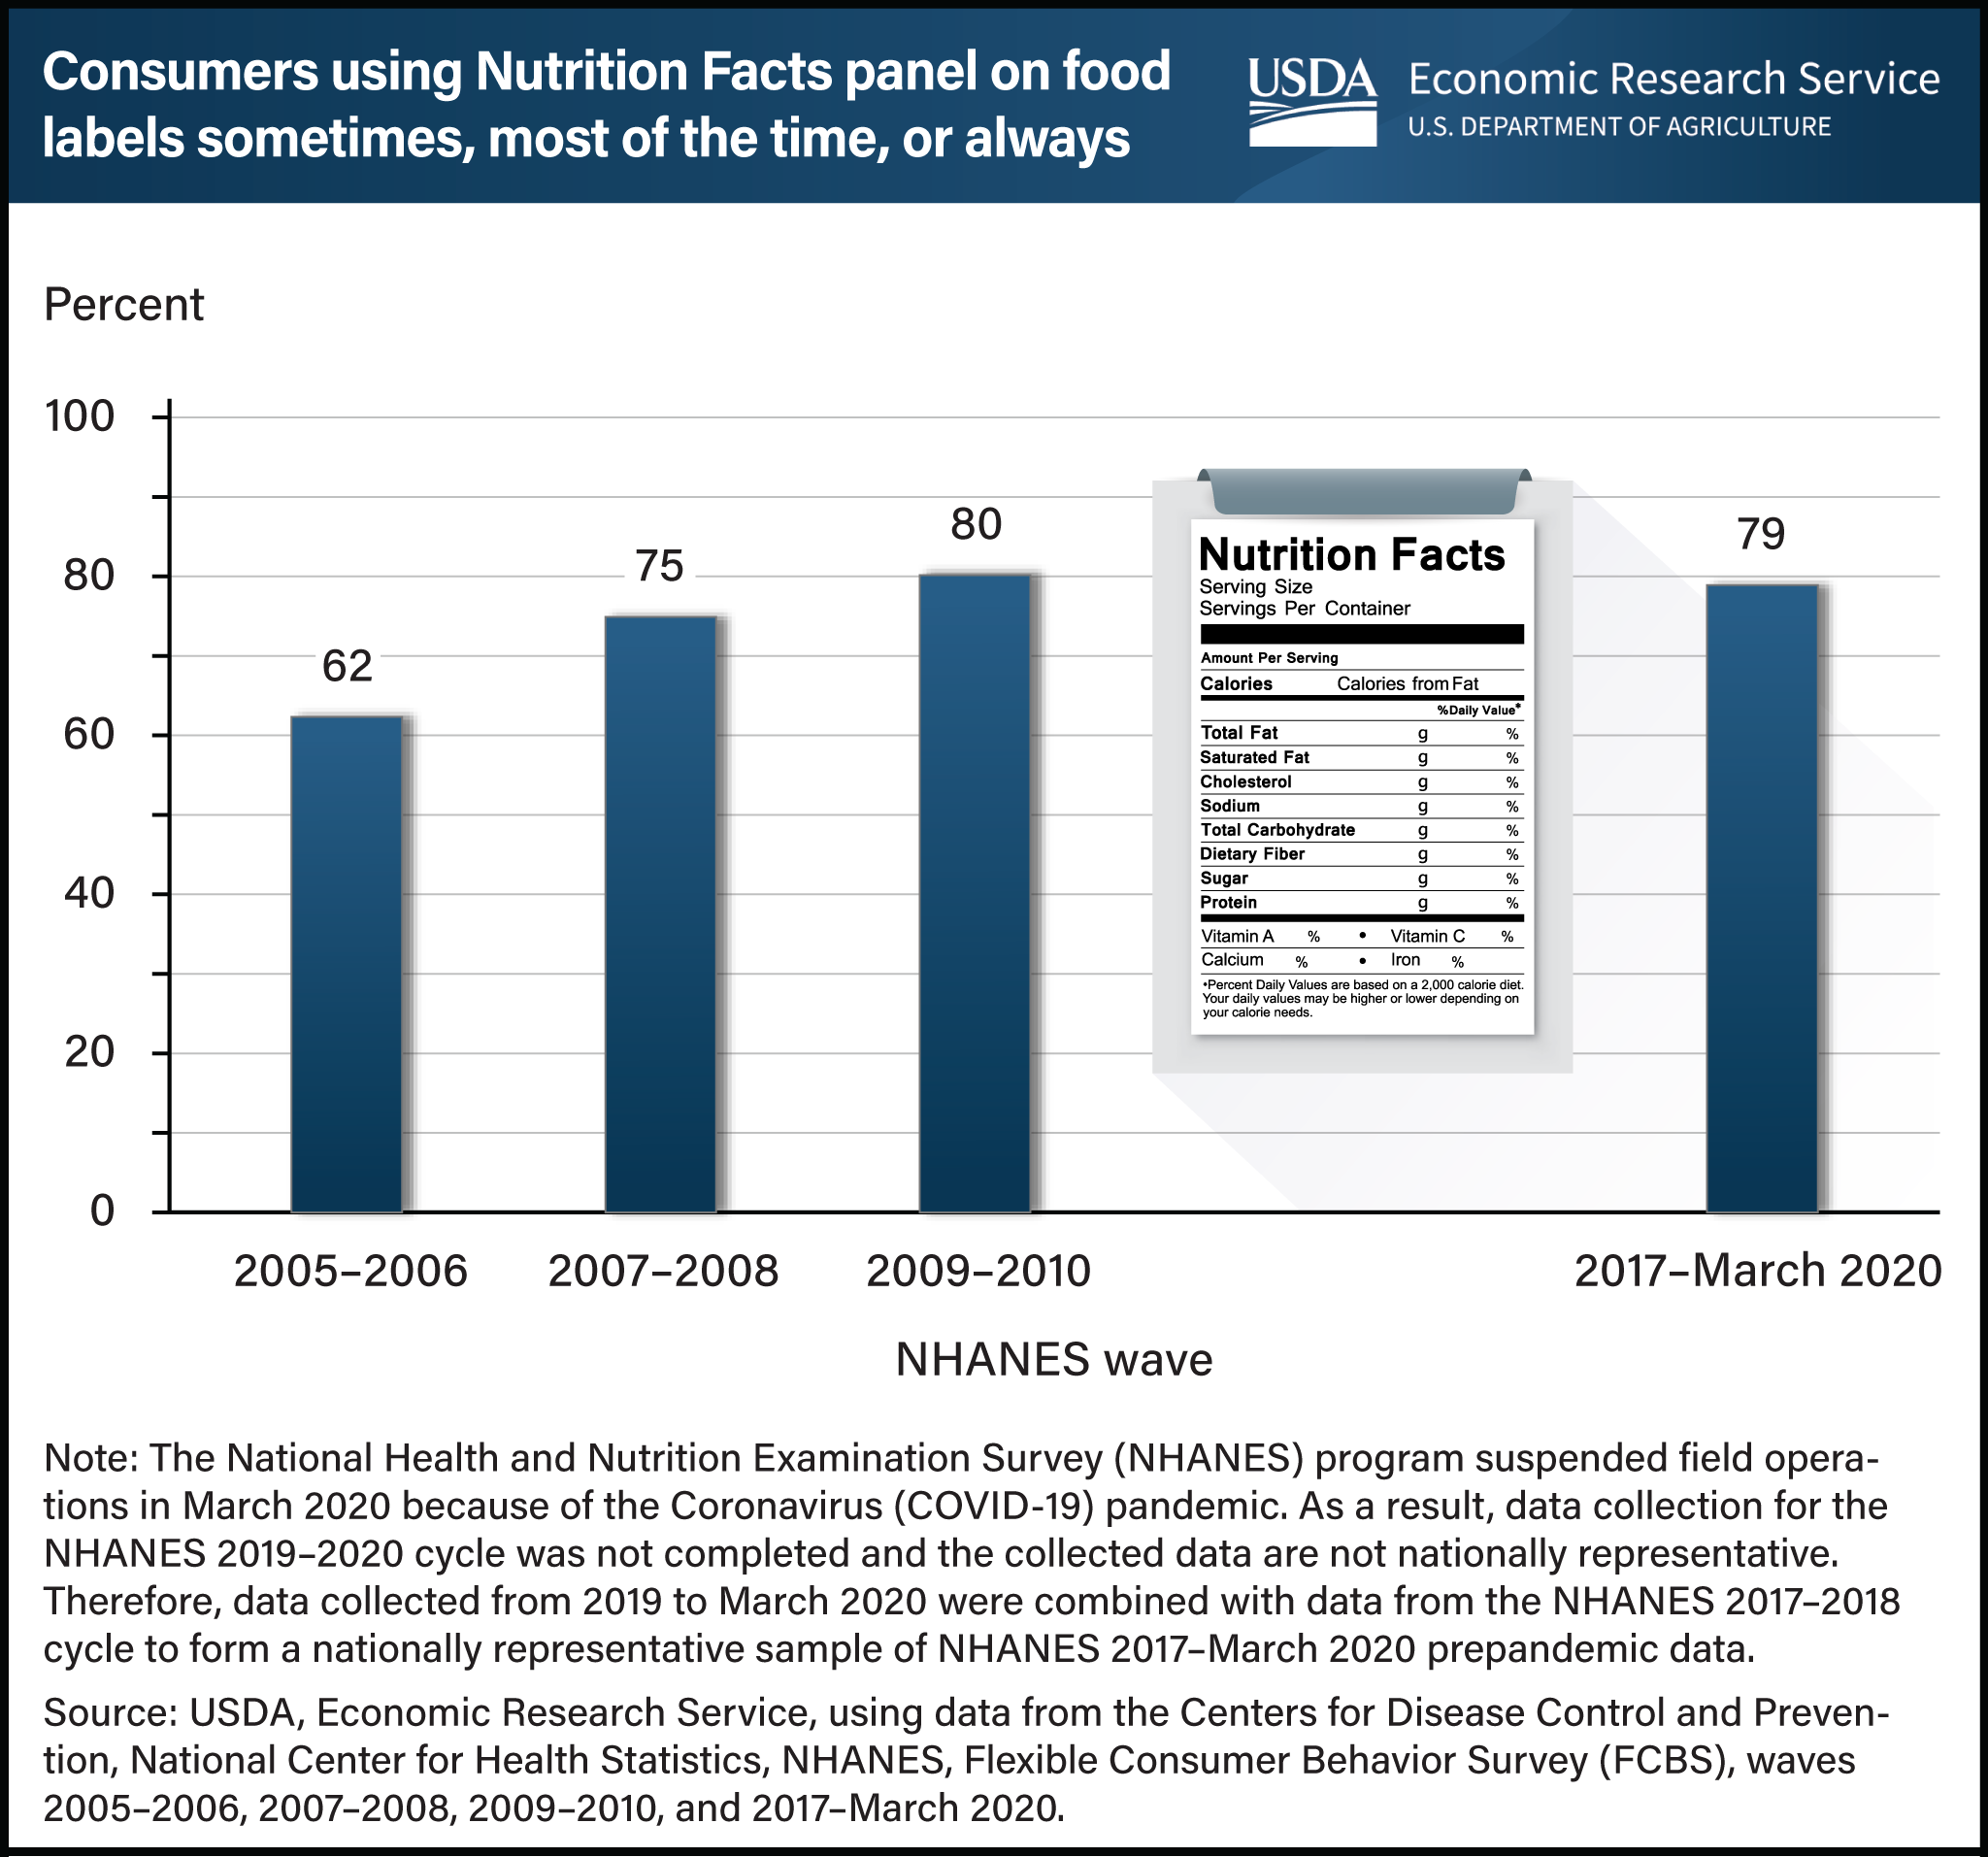 https://www.ers.usda.gov/webdocs/charts/106958/Nutrition-Facts-Panels.png?v=3783.3